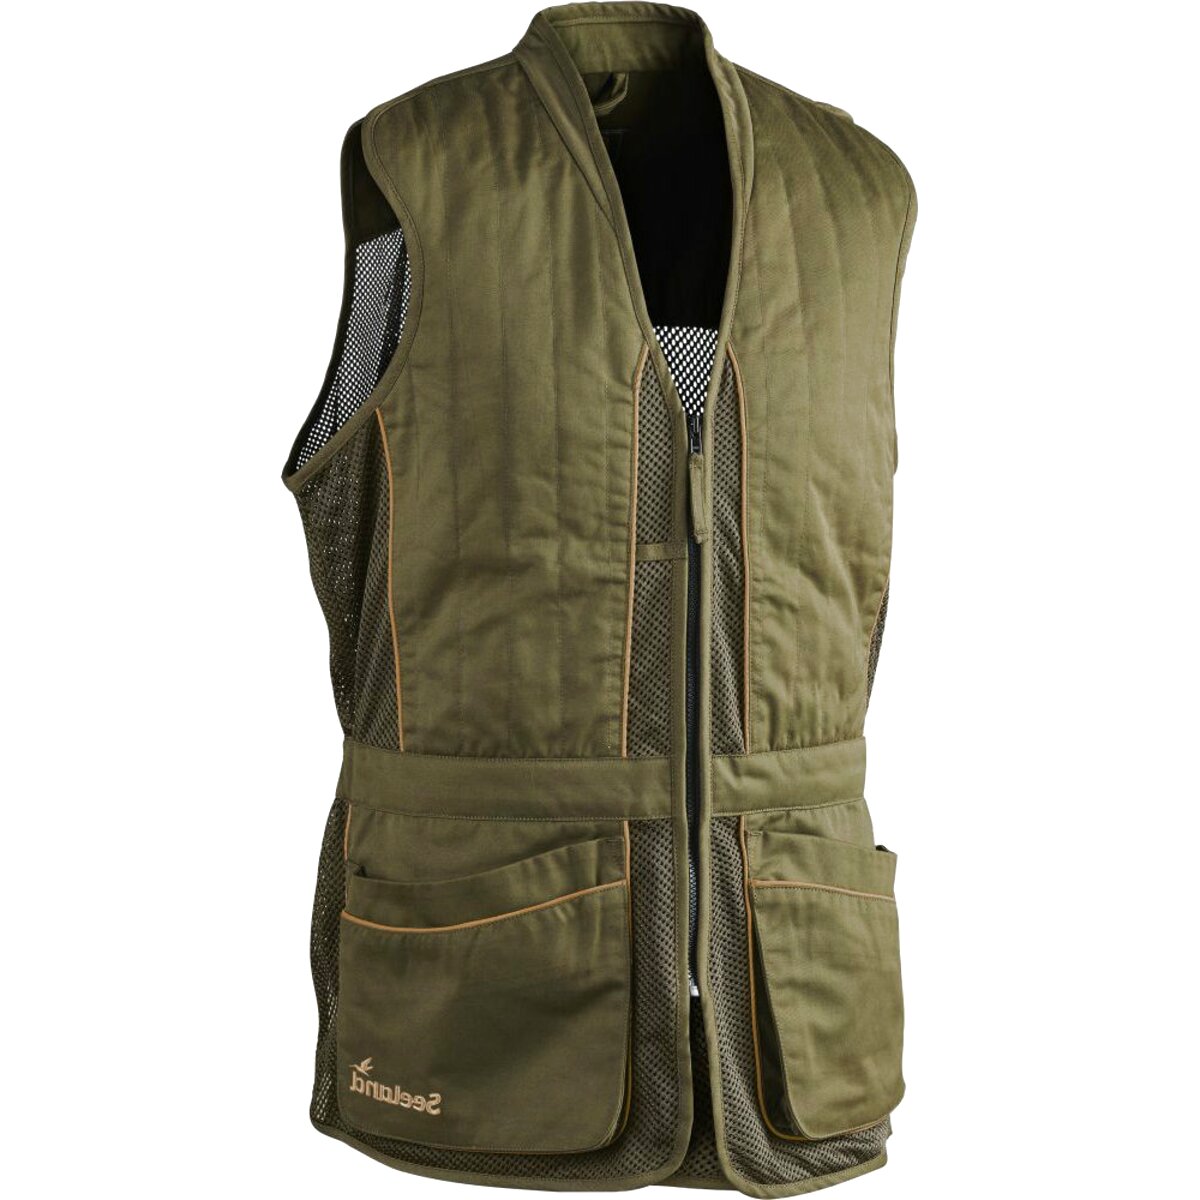 Shooting Skeet Vest for sale in UK | 60 used Shooting Skeet Vests